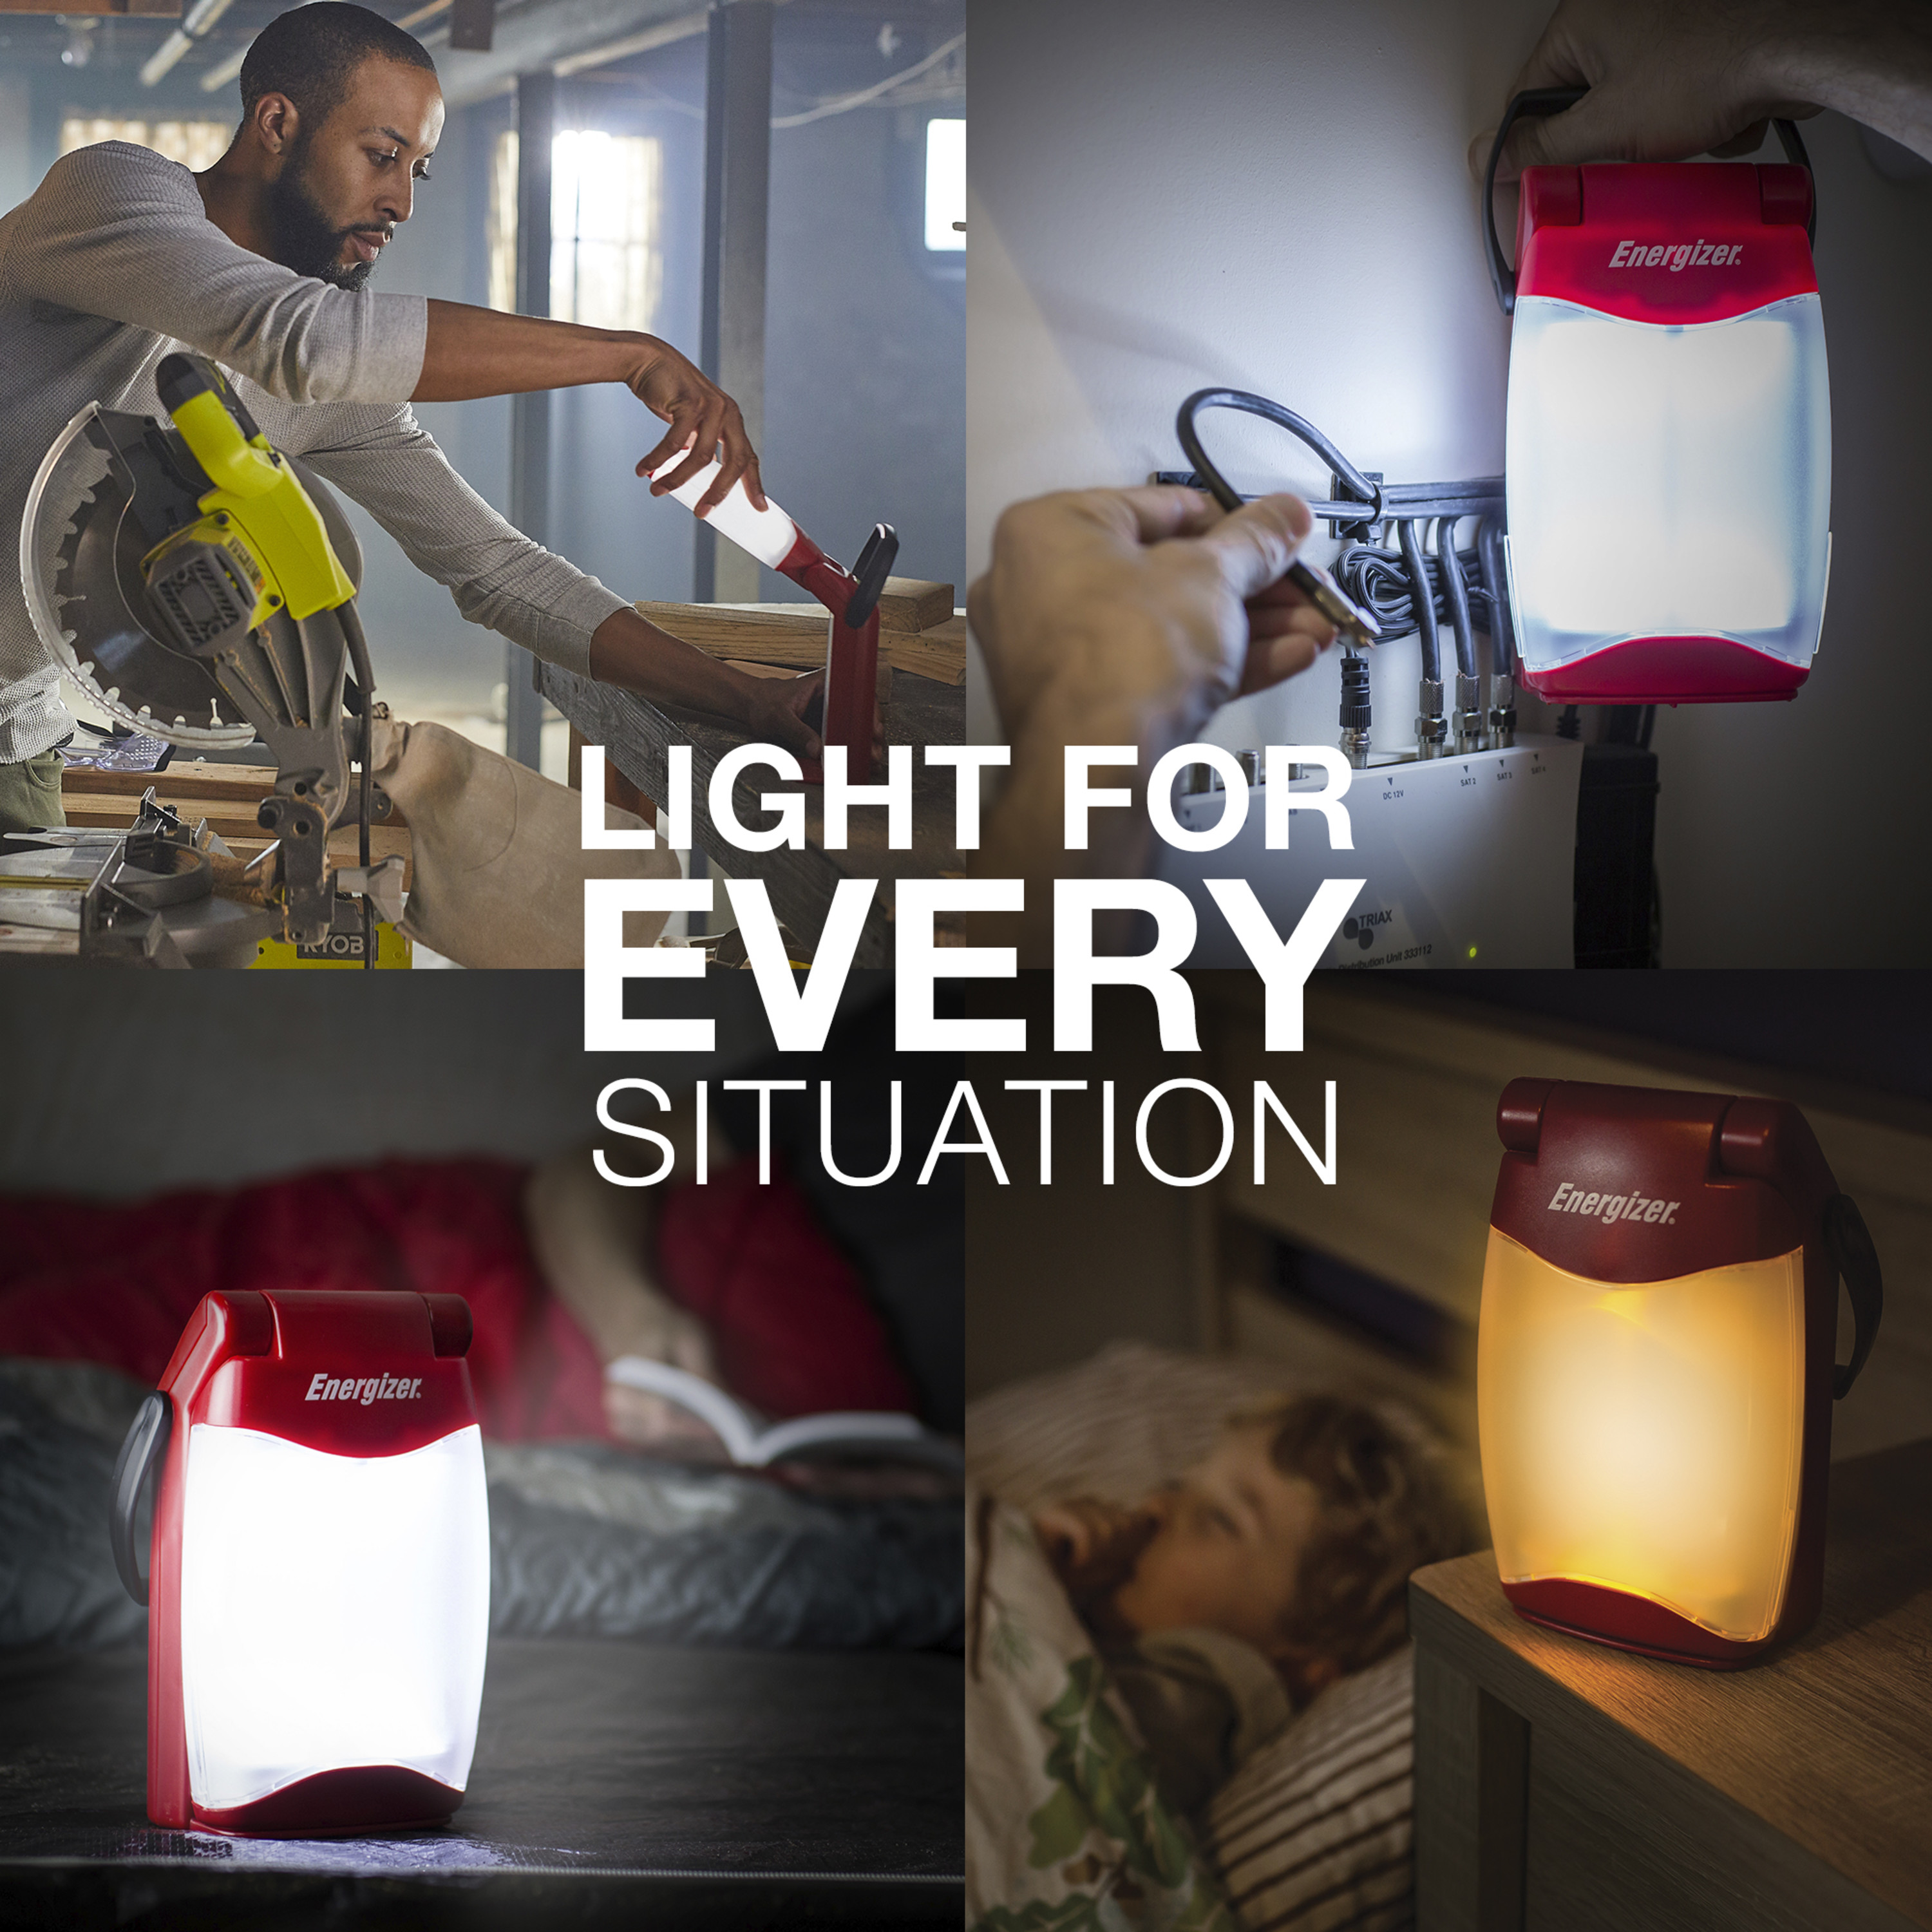 Energizer Emergency Folding LED Lantern, Red, 500 Lumens, IPX4 Water Resistant, Portable LED Light, Durable Emergency Lantern - image 9 of 11